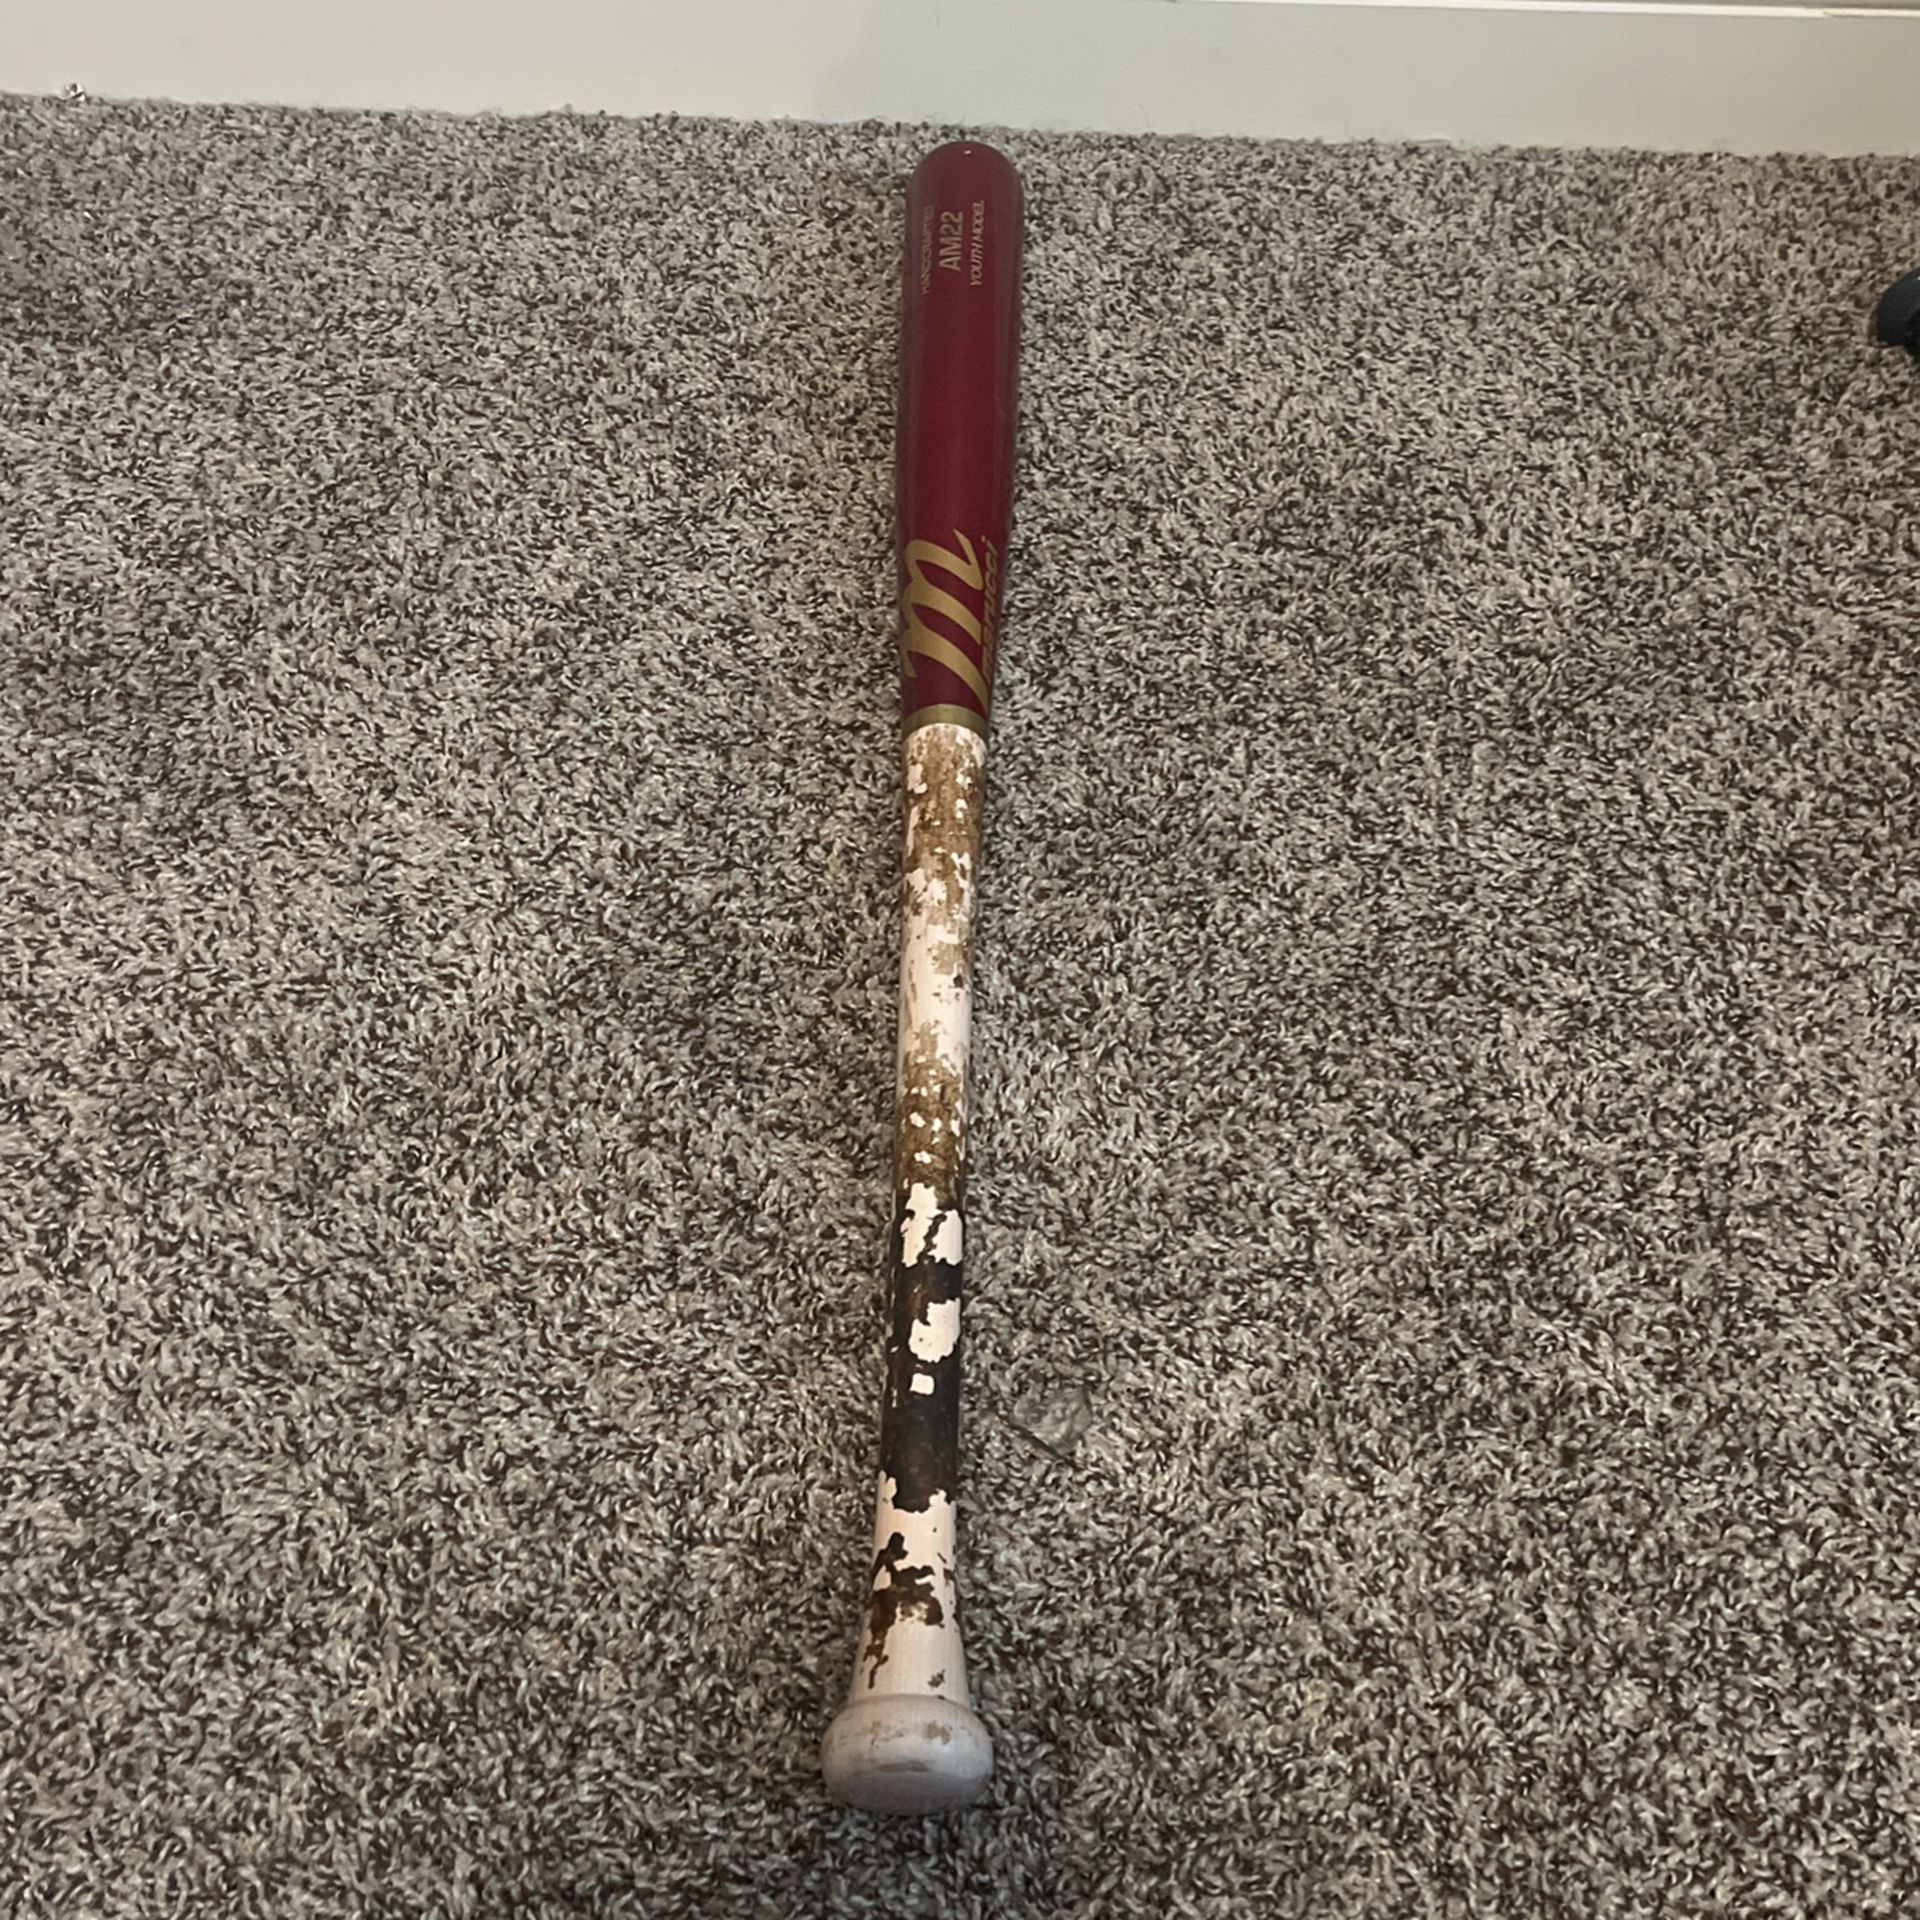 Marucci Baseball Bat For Sale Size: 30 Inch, Drop: 10